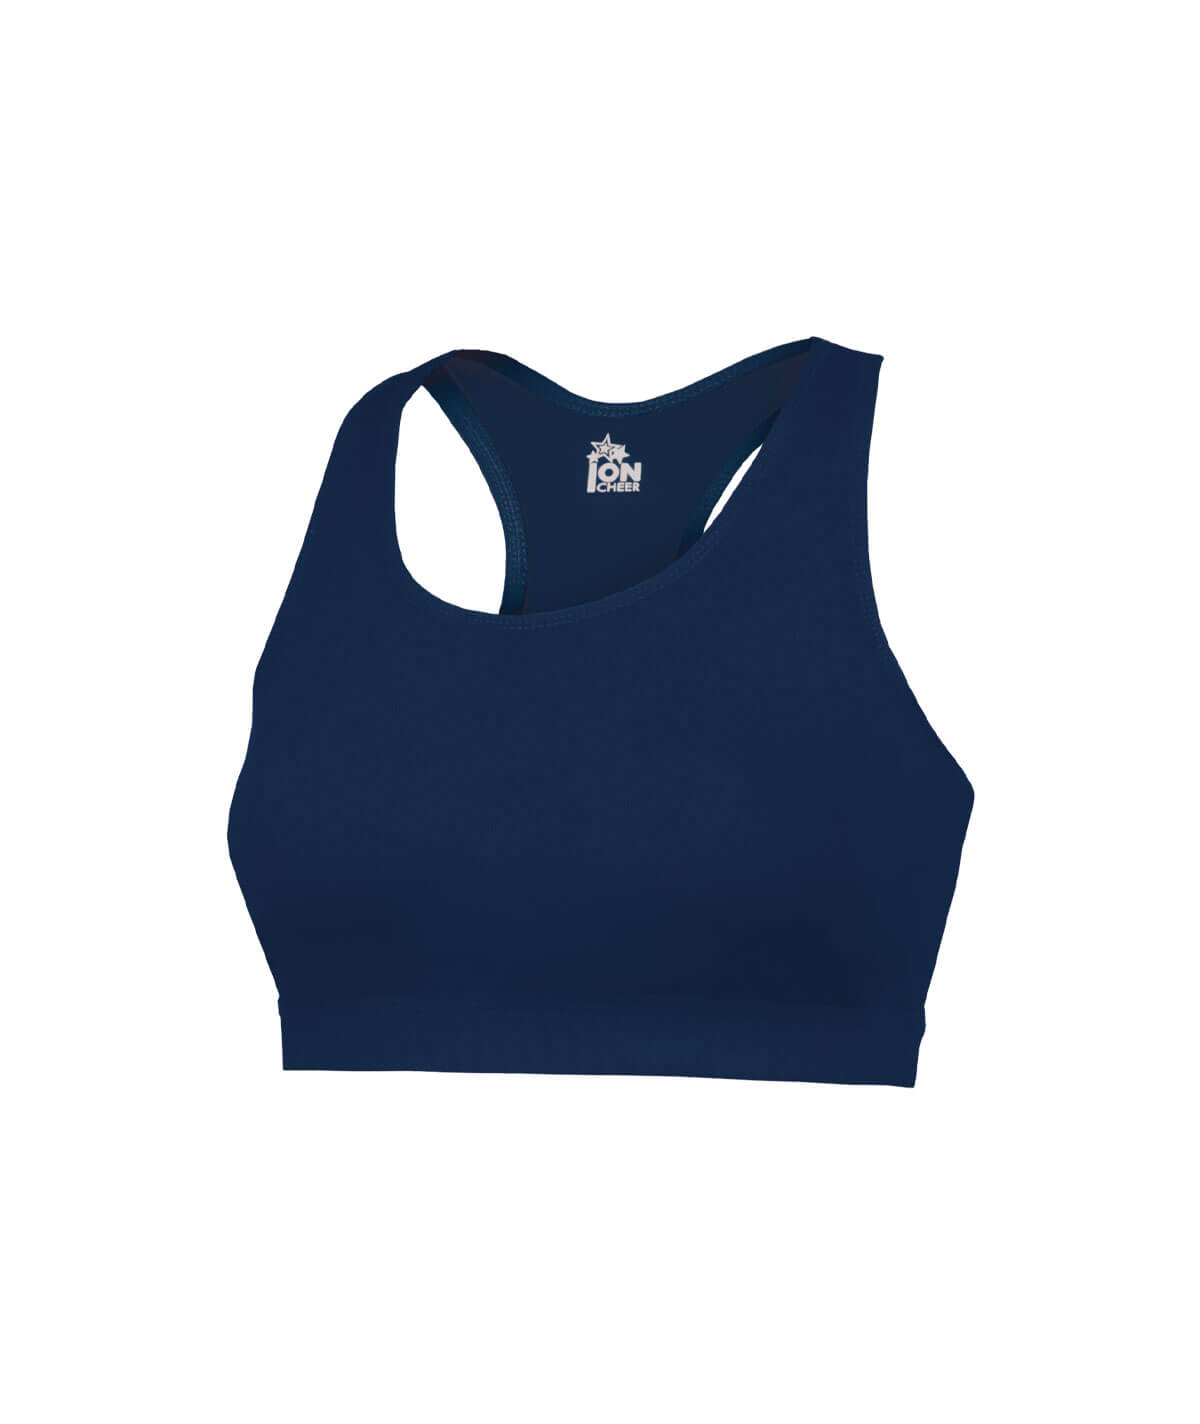 Ion Cheer Aspire Flexion Sports Bra - Practice Wear